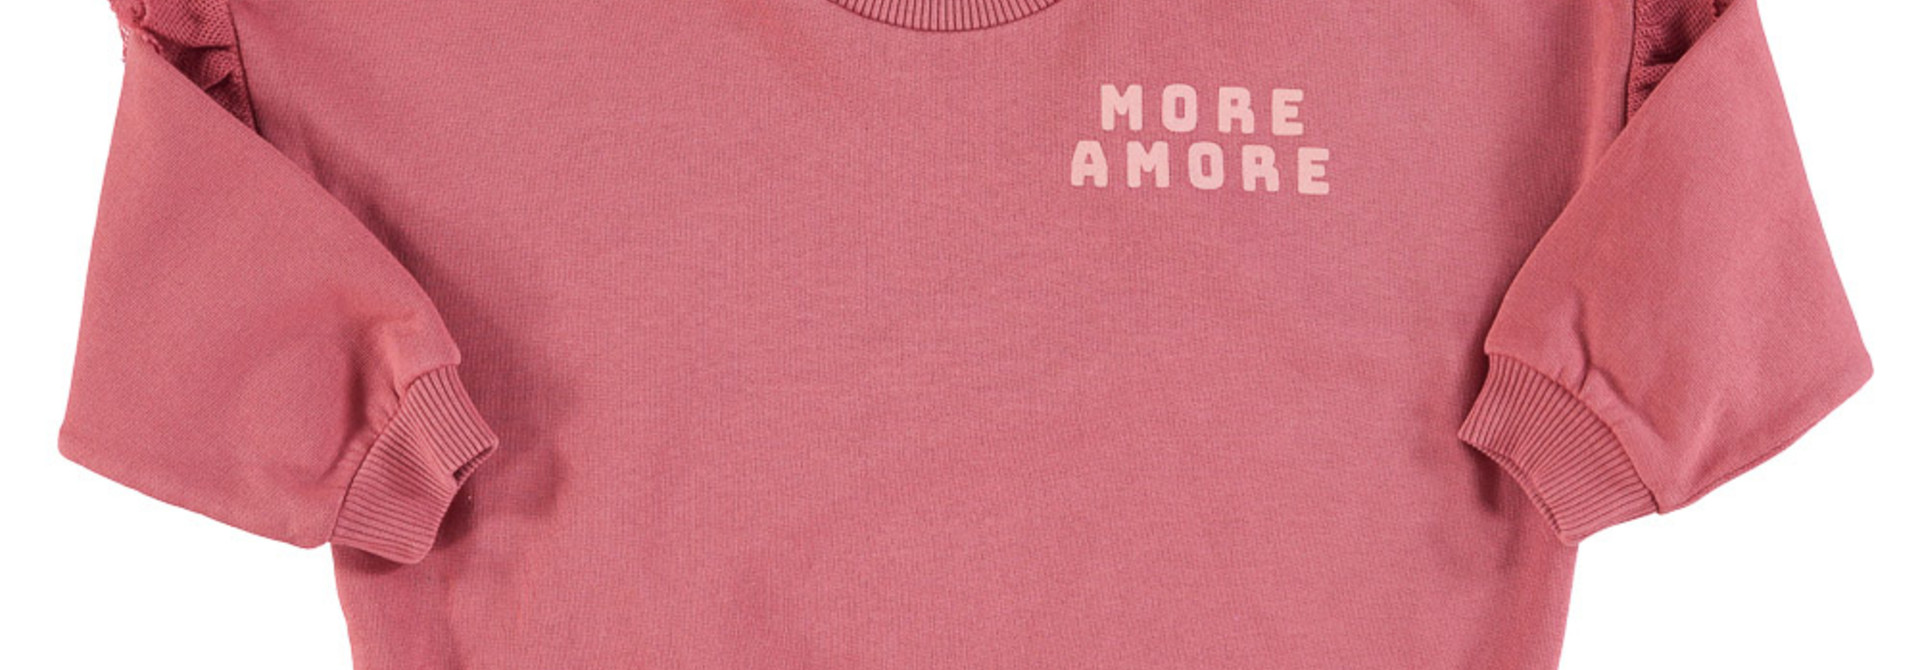 sweatshirt w/ frills on shoulders - promegranate w/ print